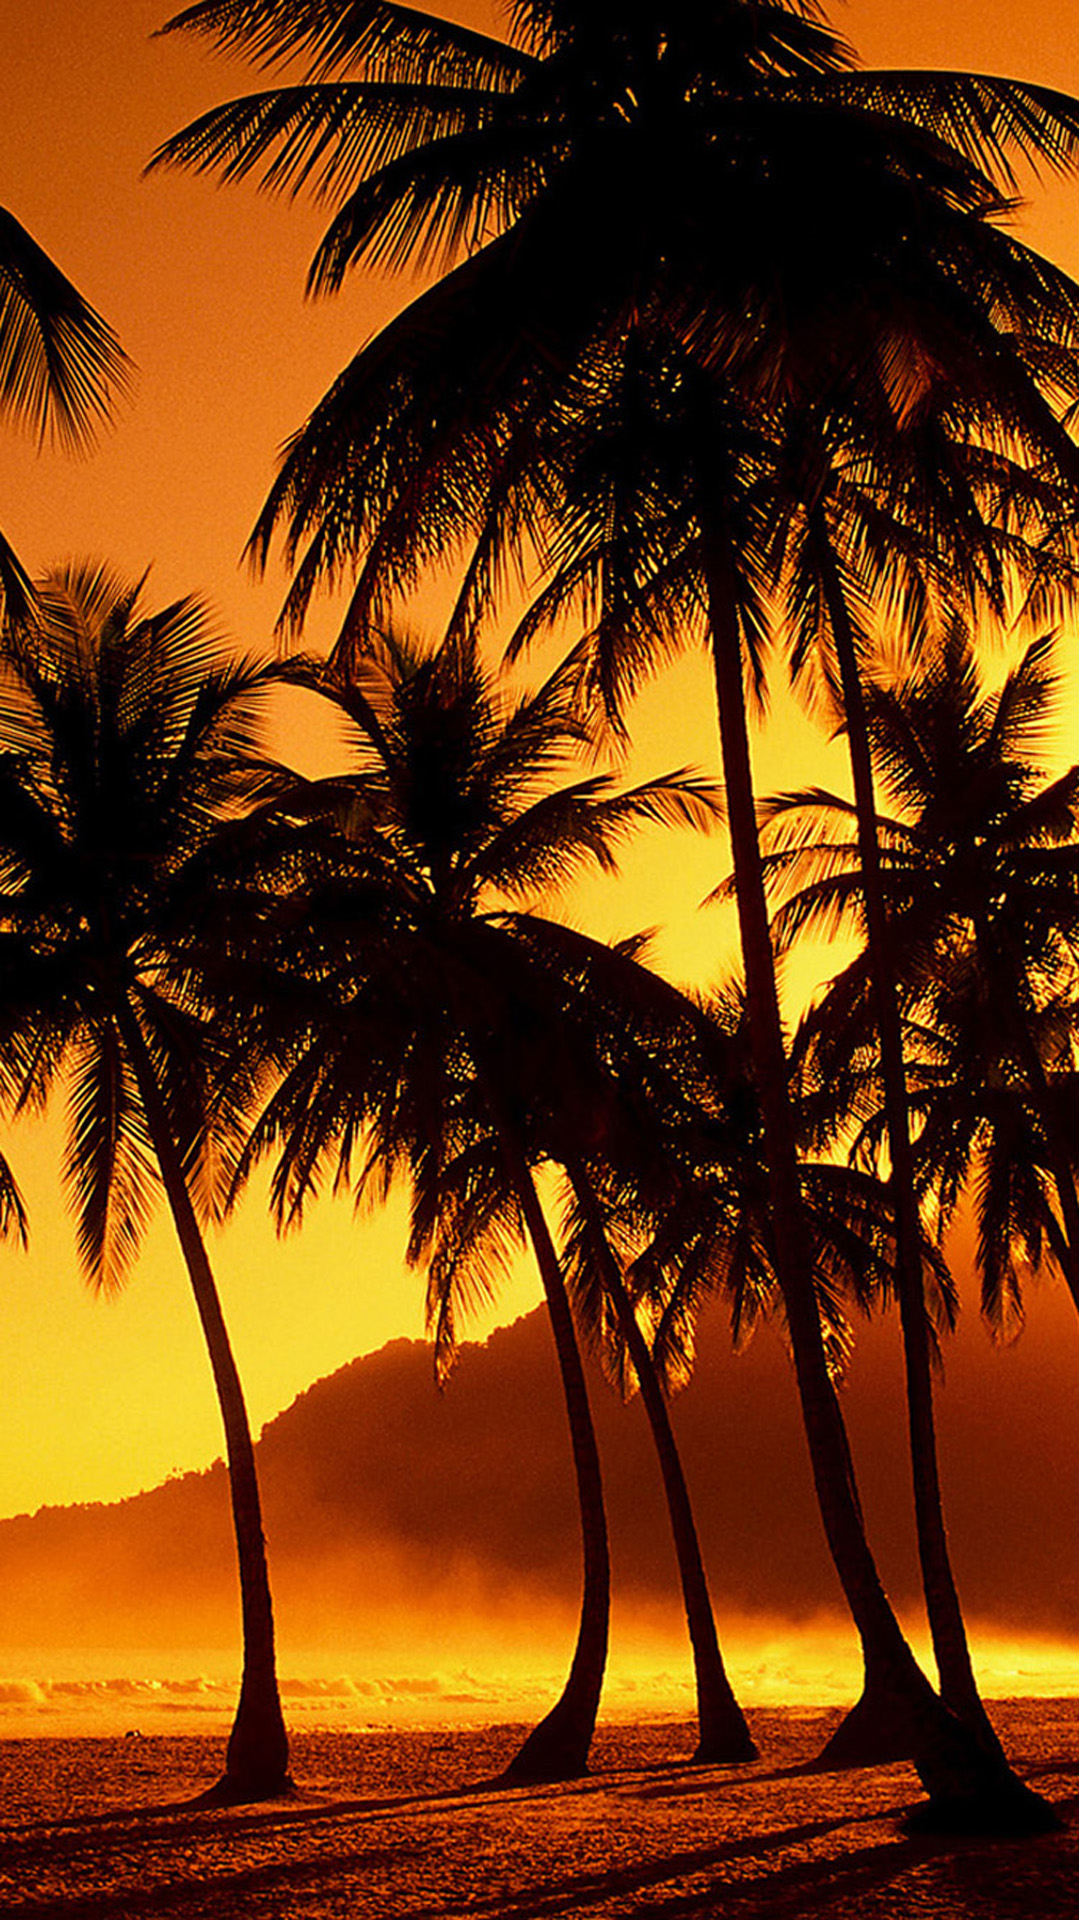 albero di cocco wallpaper hd,albero,natura,cielo,palma,tramonto